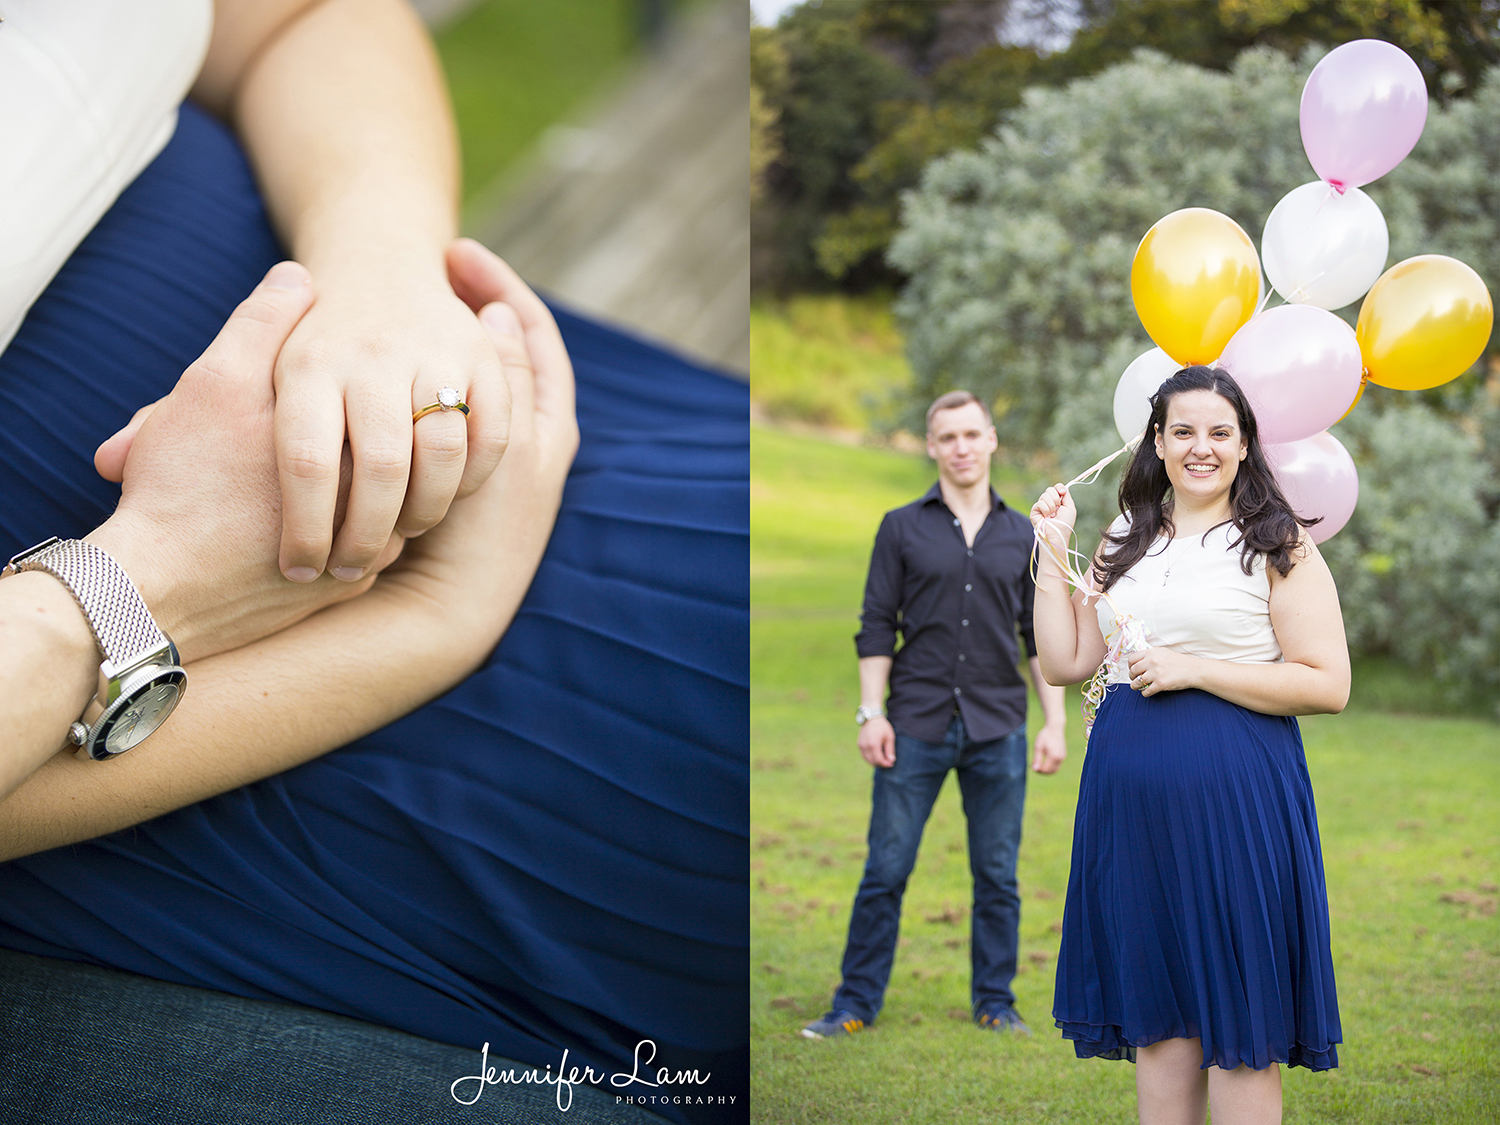 Engagement Session - Sydney Wedding Photographer - Jennifer Lam Photography (1).jpg